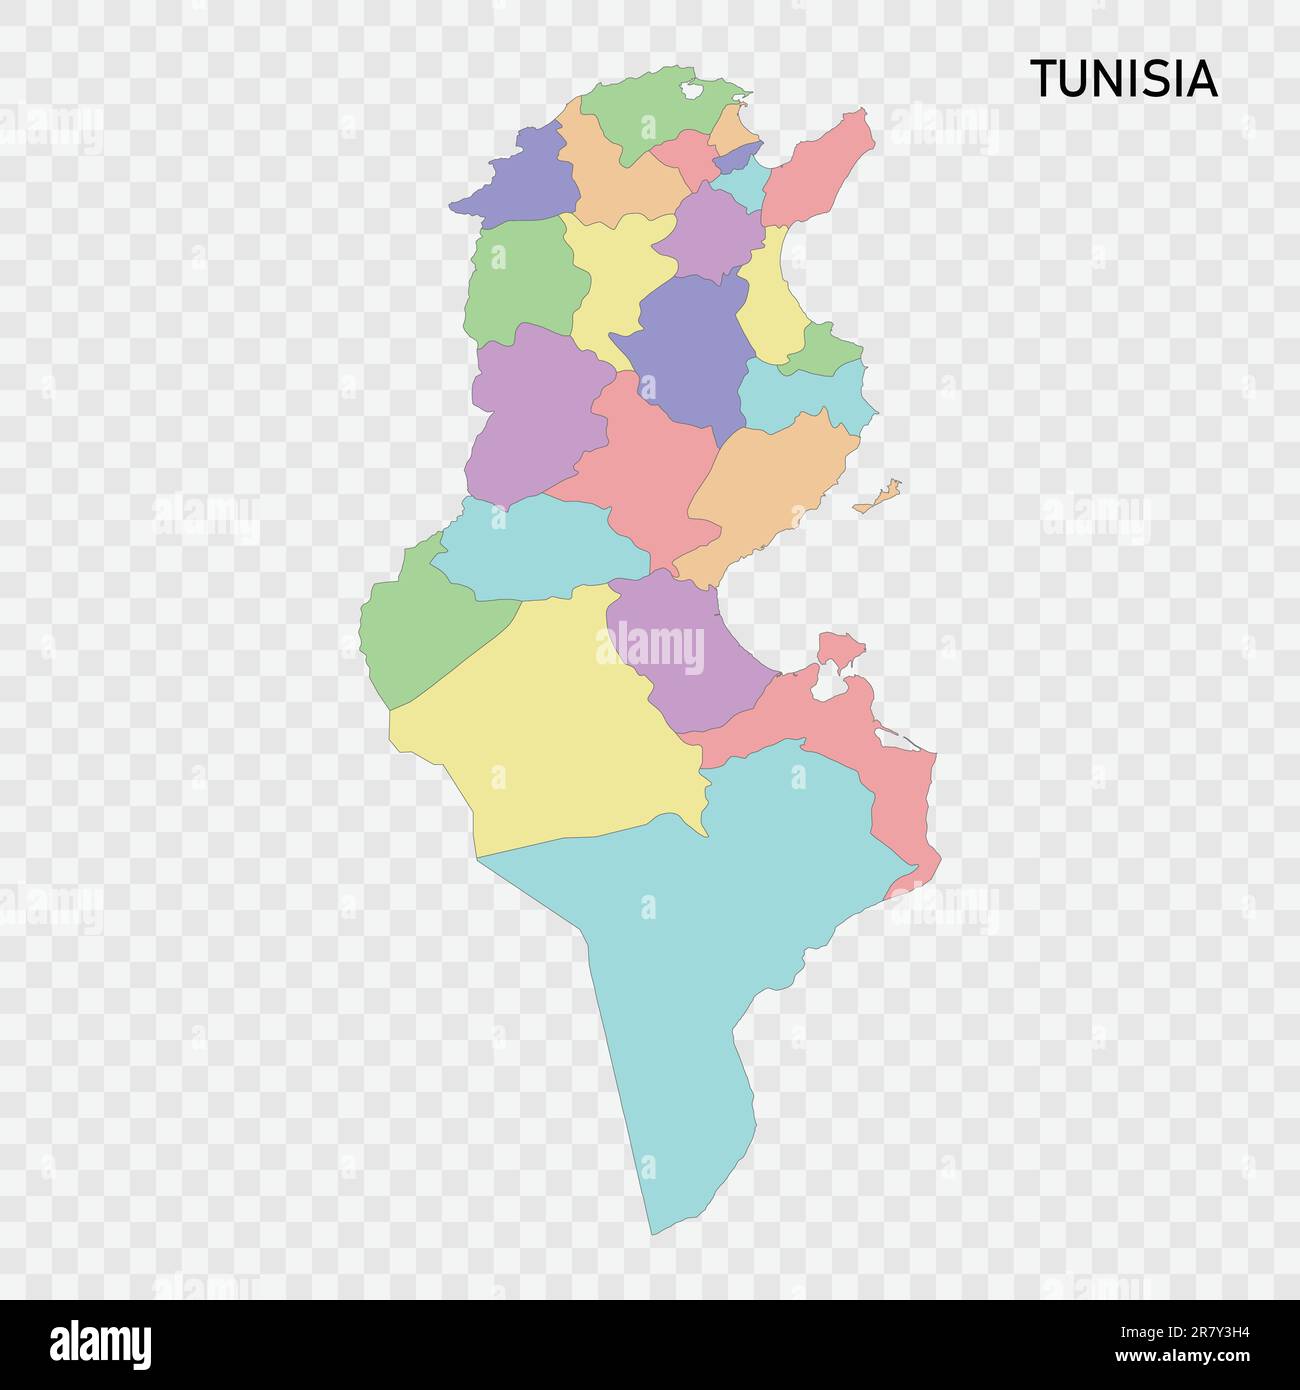 Carte couleur isolée de la Tunisie avec frontières des régions Illustration de Vecteur